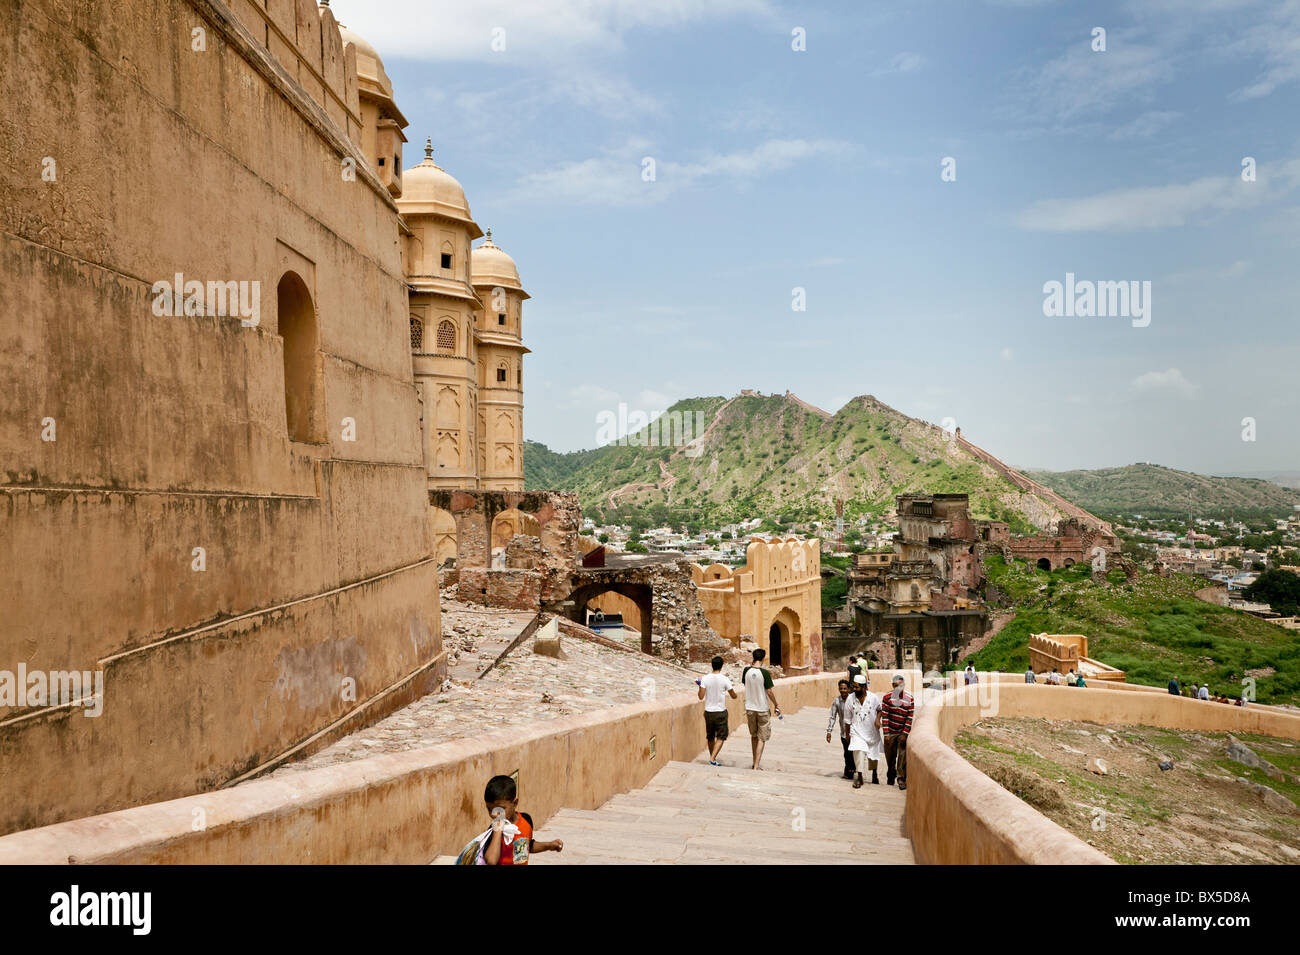 Los turistas que caminan escaleras arriba y abajo del Fuerte Amber Palace, Jaipur, Rajasthan, India, con colinas en el fondo. Foto de stock